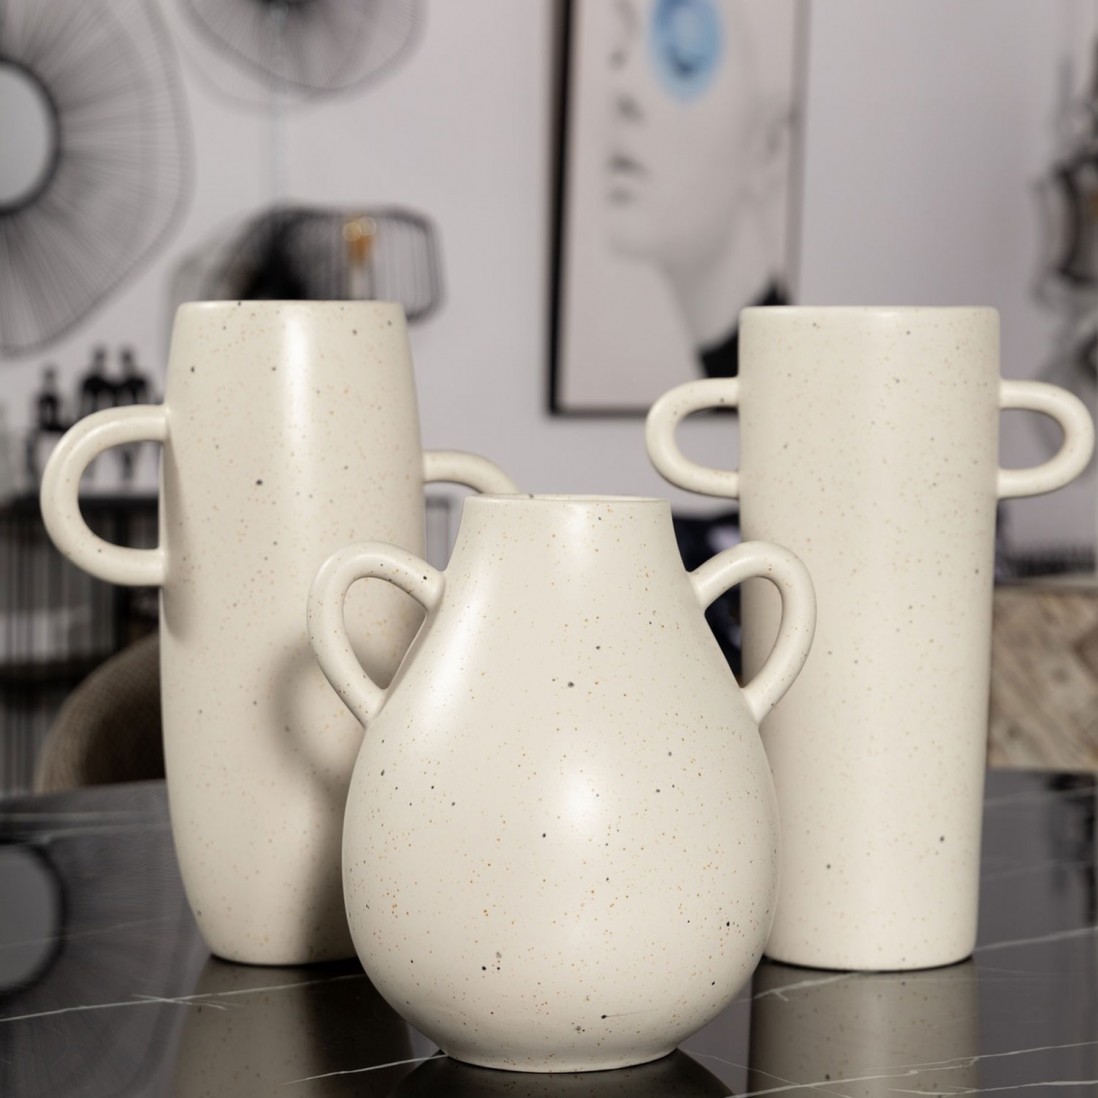 Ceramic Vase 610